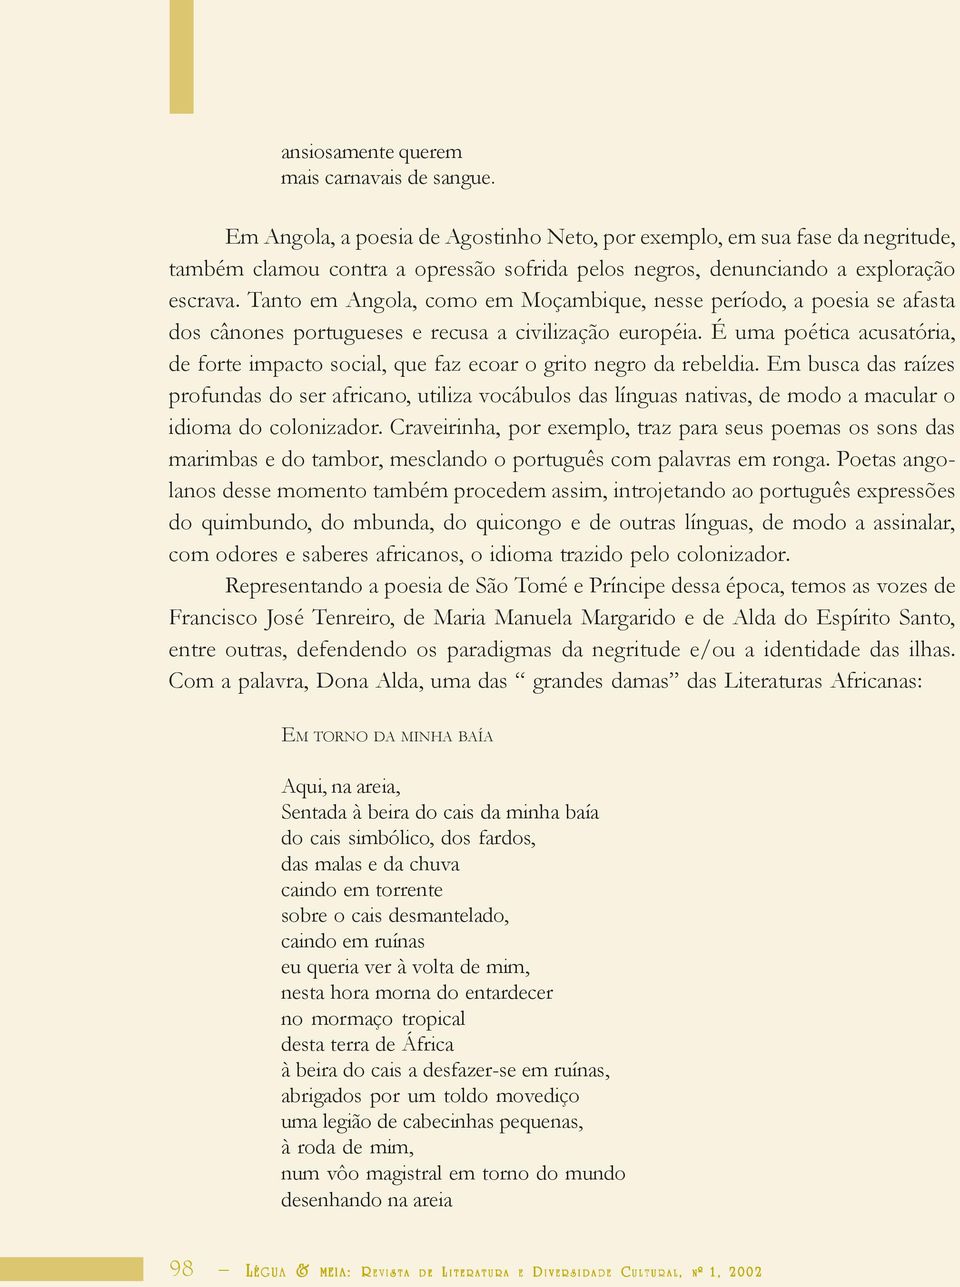 Tanto em Angola, como em Moçambique, nesse período, a poesia se afasta dos cânones portugueses e recusa a civilização européia.